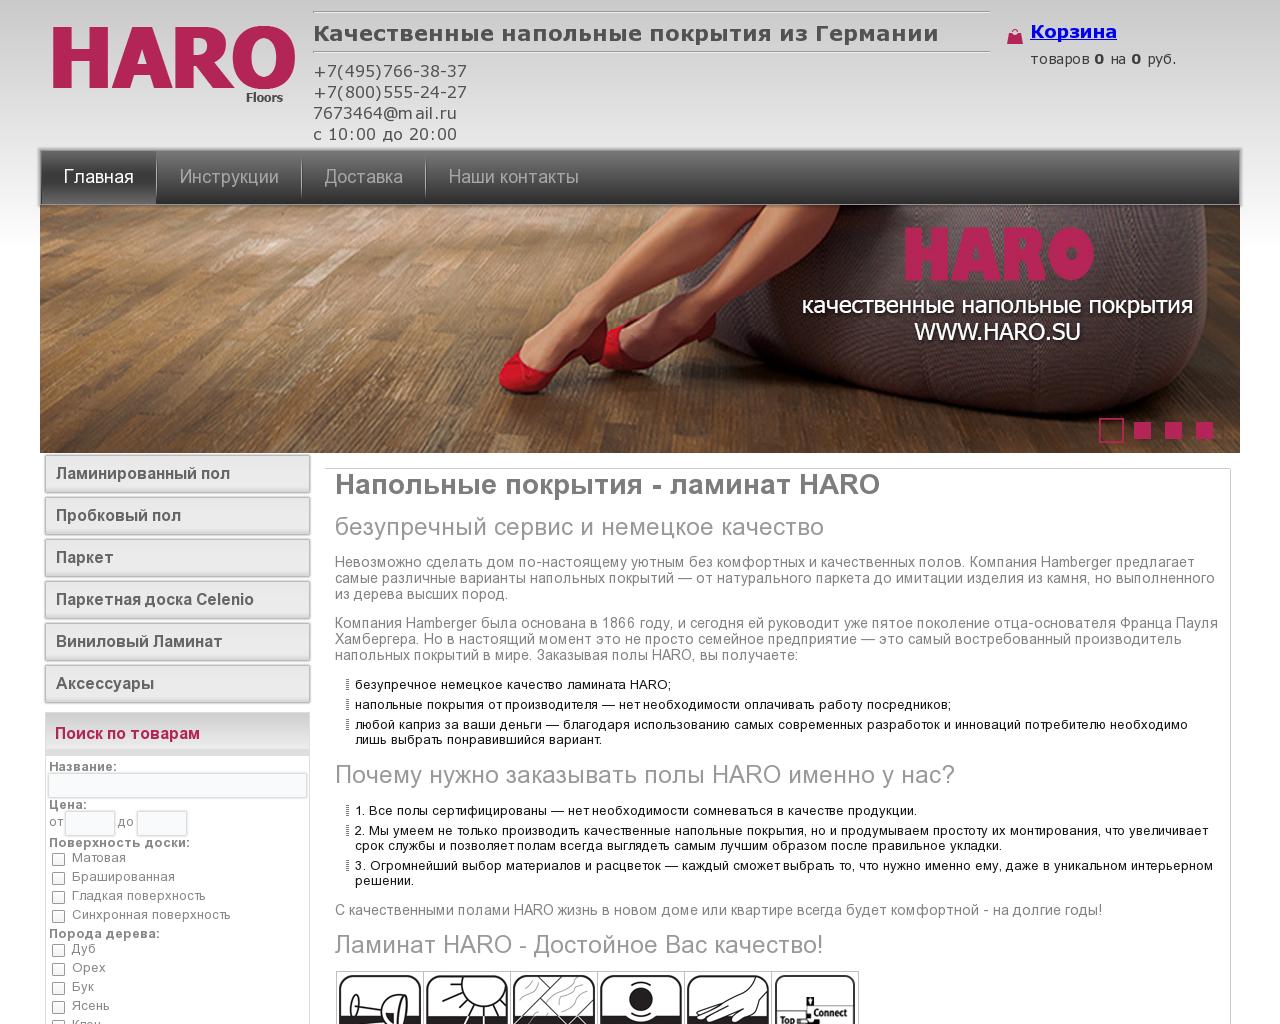 Изображение сайта haro.su в разрешении 1280x1024